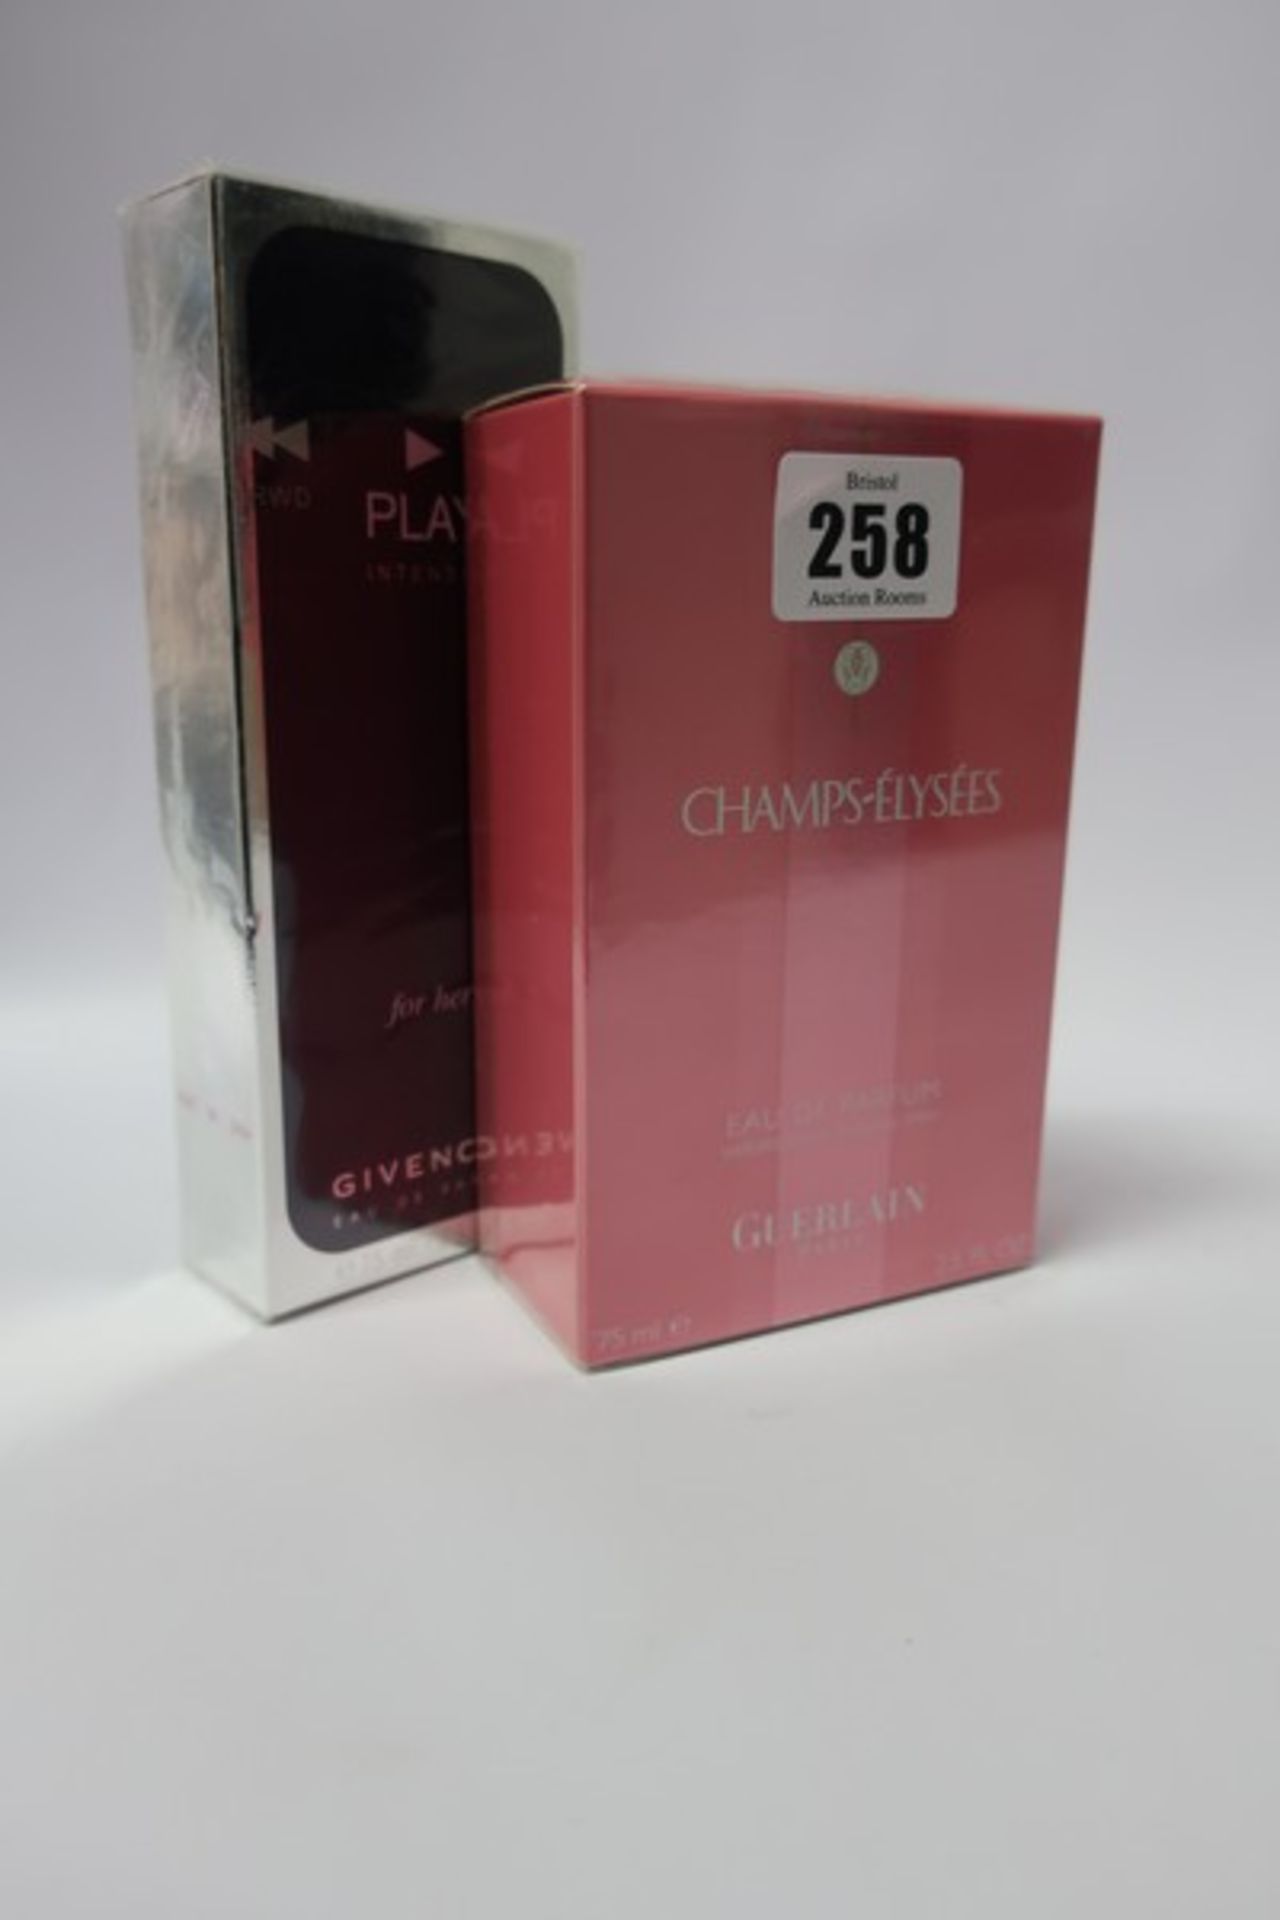 Two Givenchy Play Intense eau de parfum (75ml) and two Guerlain Champs-Elysees eau de parfum (